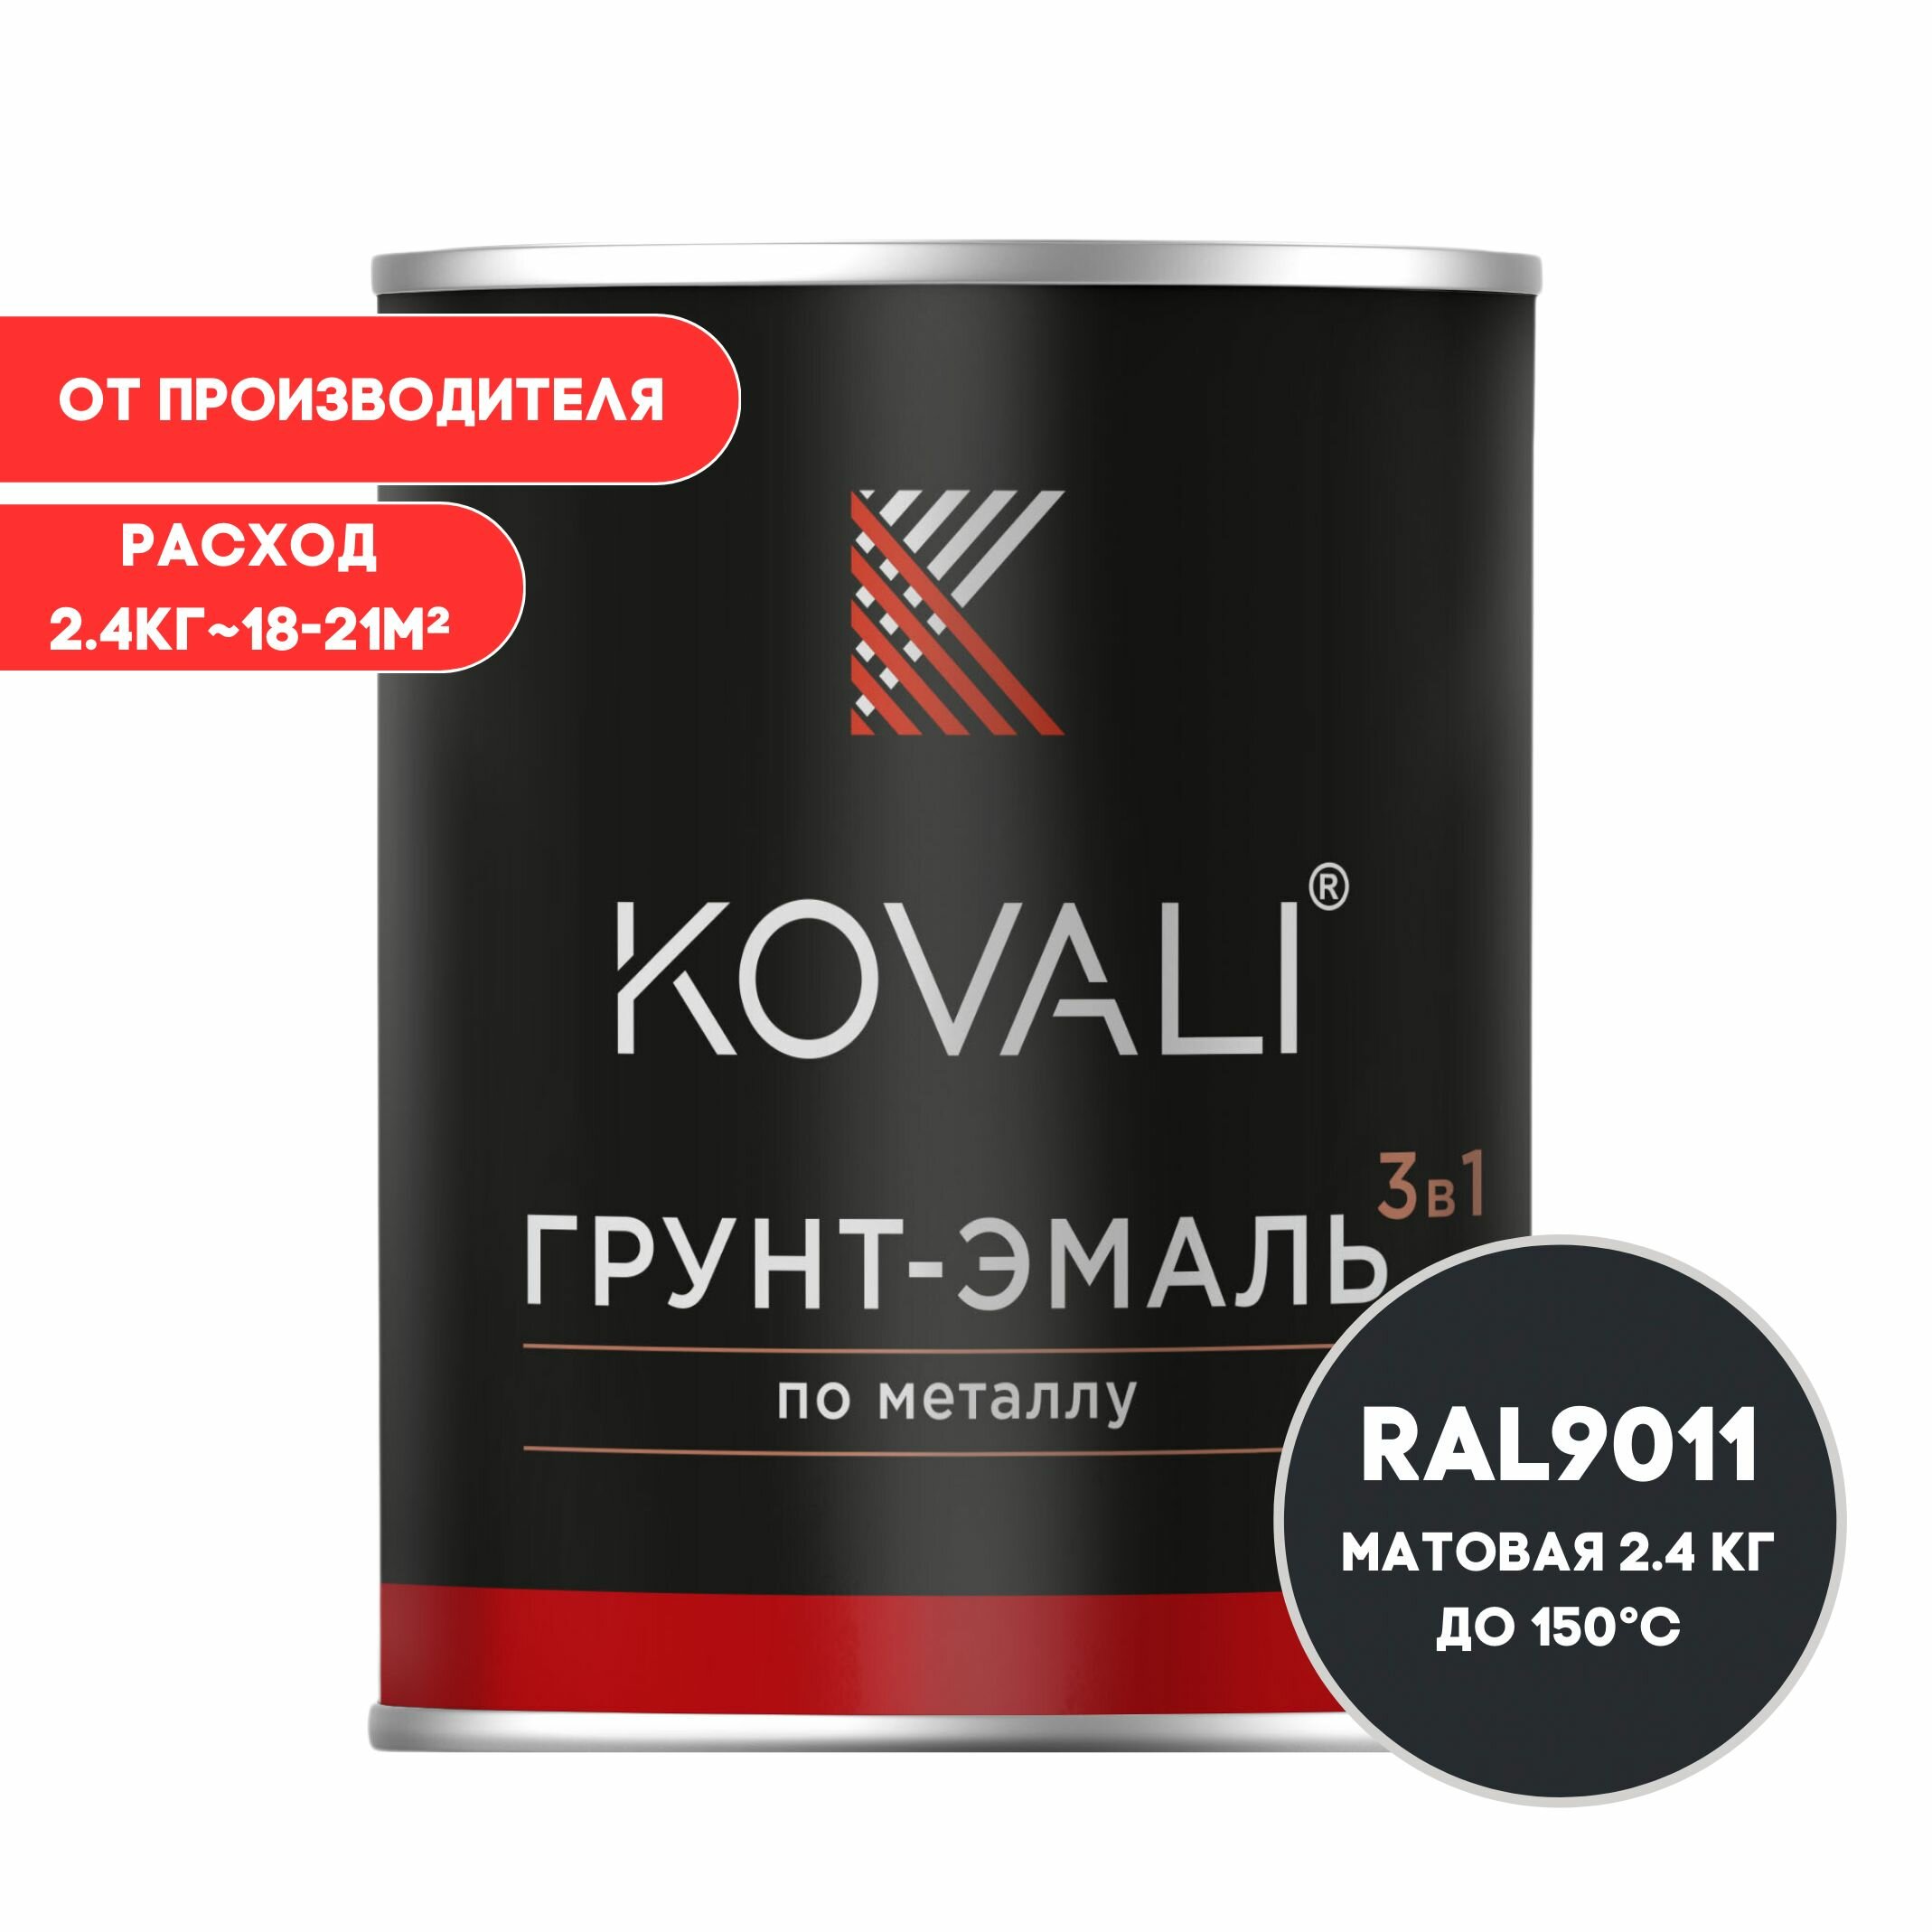 Грунт-эмаль 3 в 1 KOVALI матовая Графитовый черный RAL 9011 2.4 кг краска по металлу по ржавчине быстросохнущая